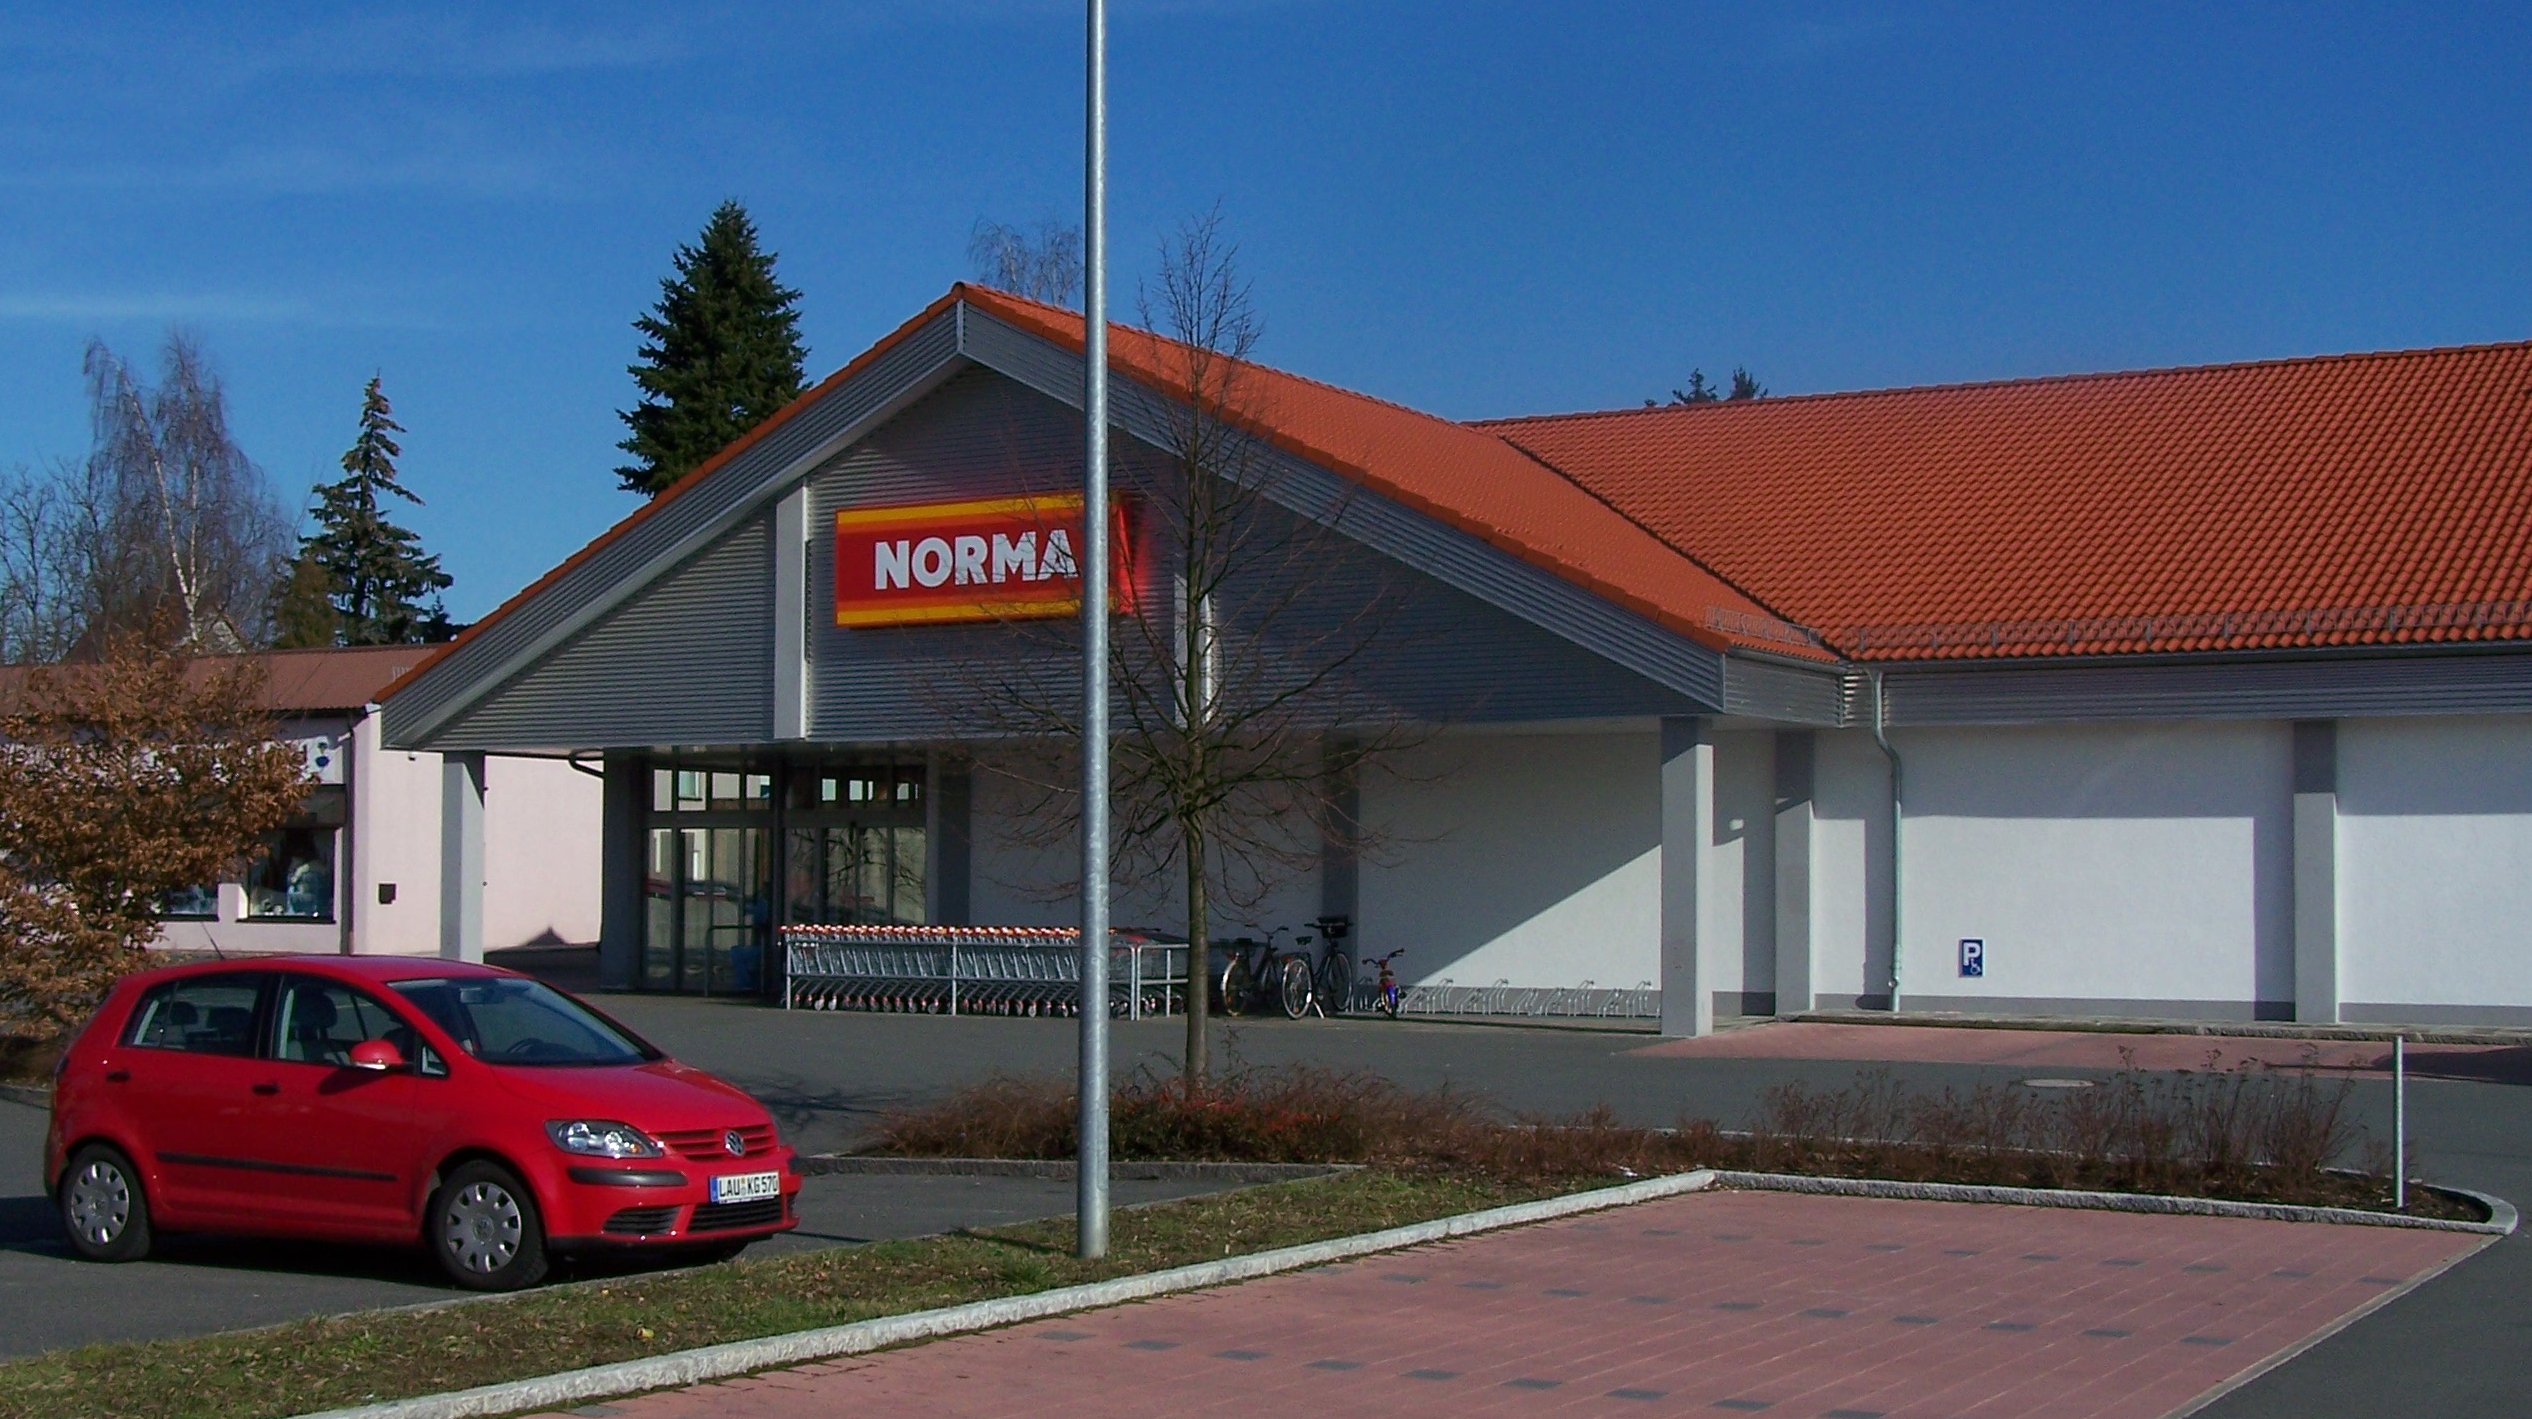 Supermarket (Norma) in Schnaittach, Germany.